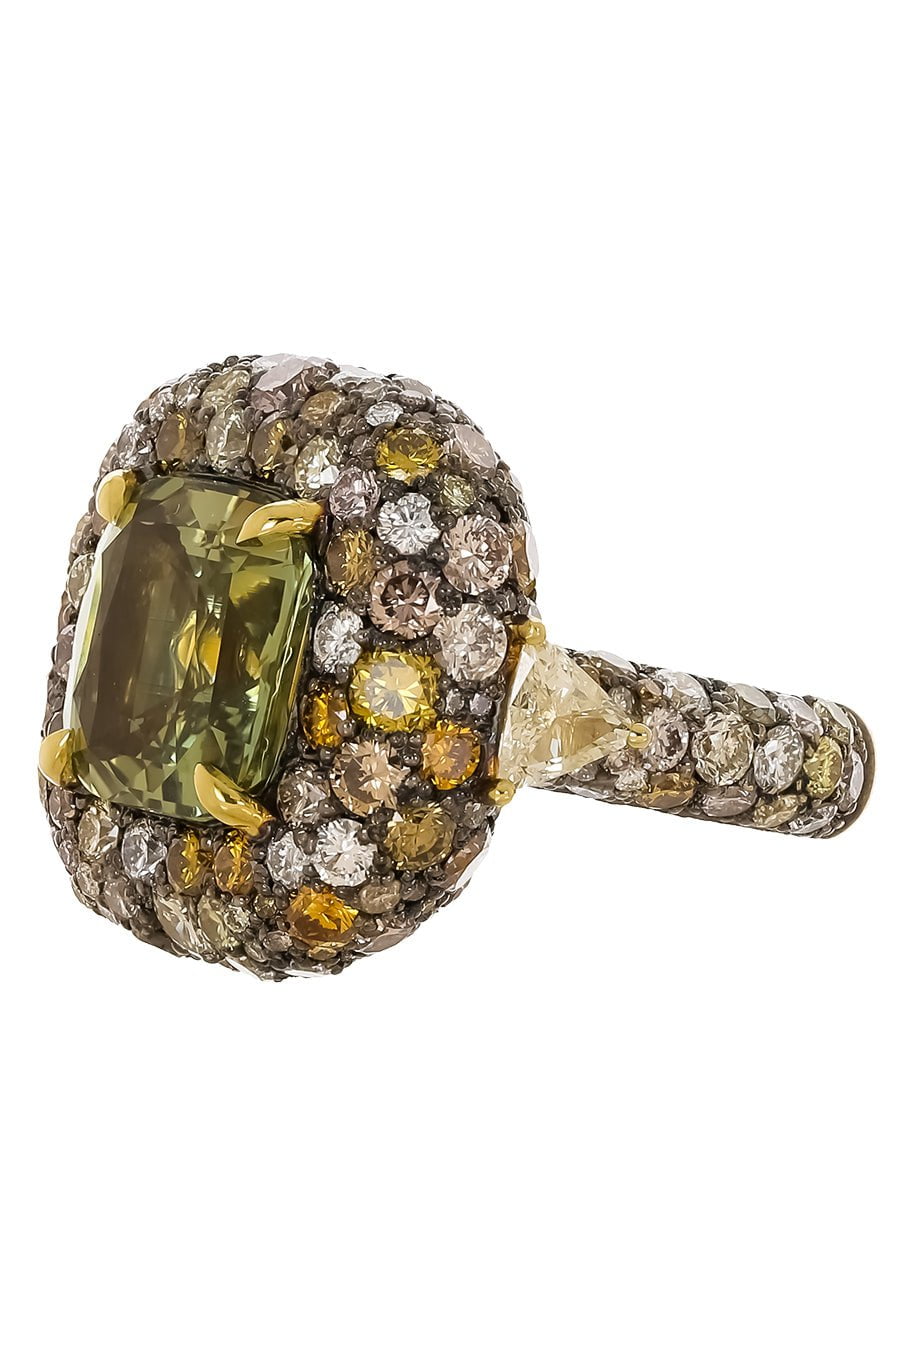 JARED LEHR-Alexandrite Yellow Diamond Ring-YELLOW GOLD